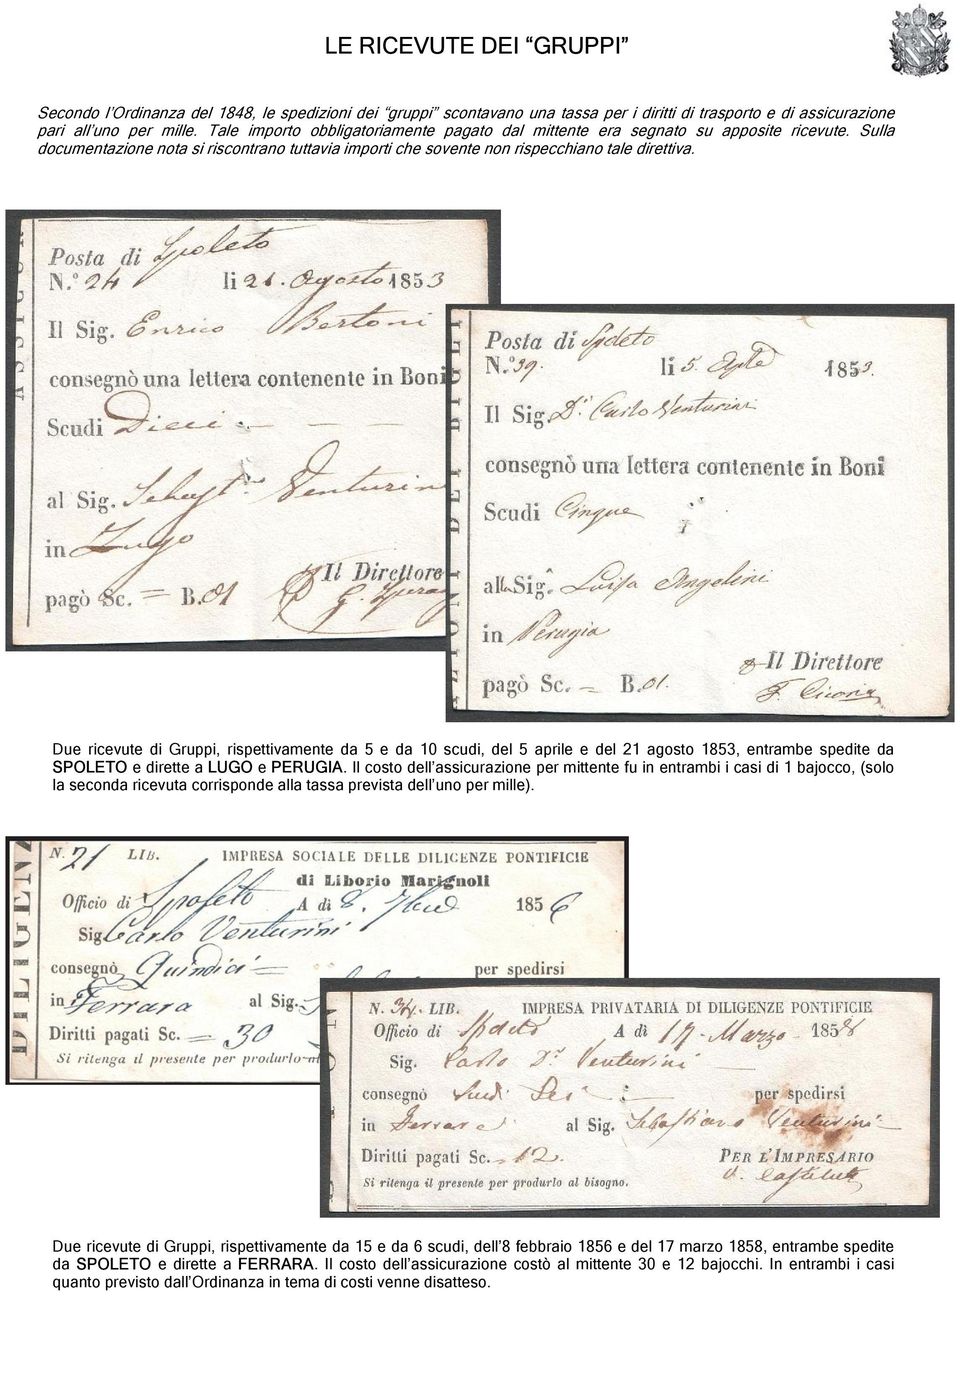 Due ricevute di Gruppi, rispettivamente da 5 e da 10 scudi, del 5 aprile e del 21 agosto 1853, entrambe spedite da SPOLETO e dirette a LUGO e PERUGIA.